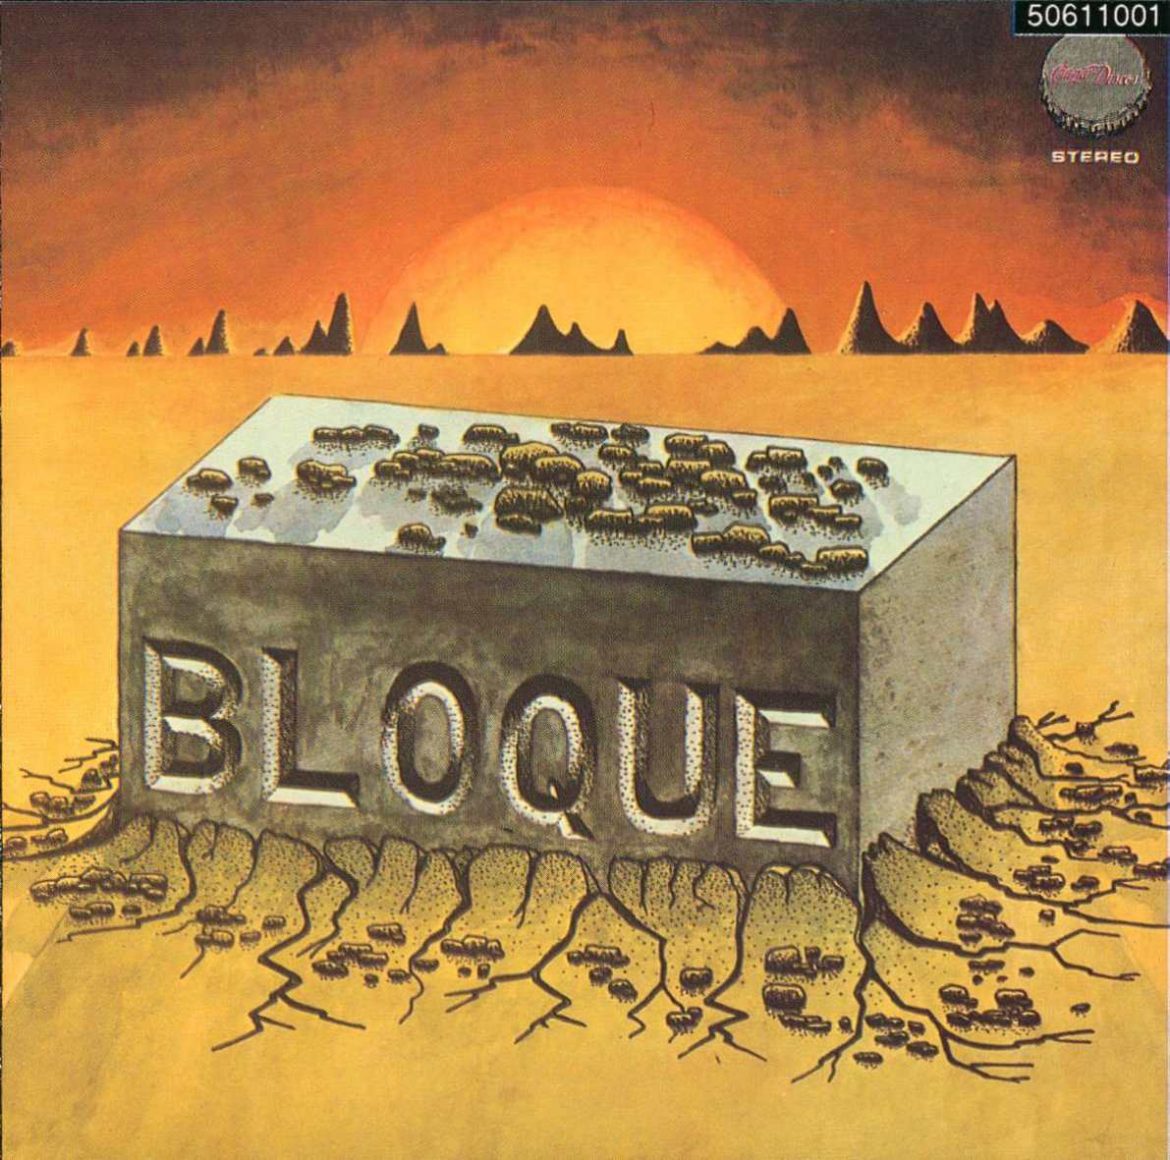 Bloque "Bloque"1978